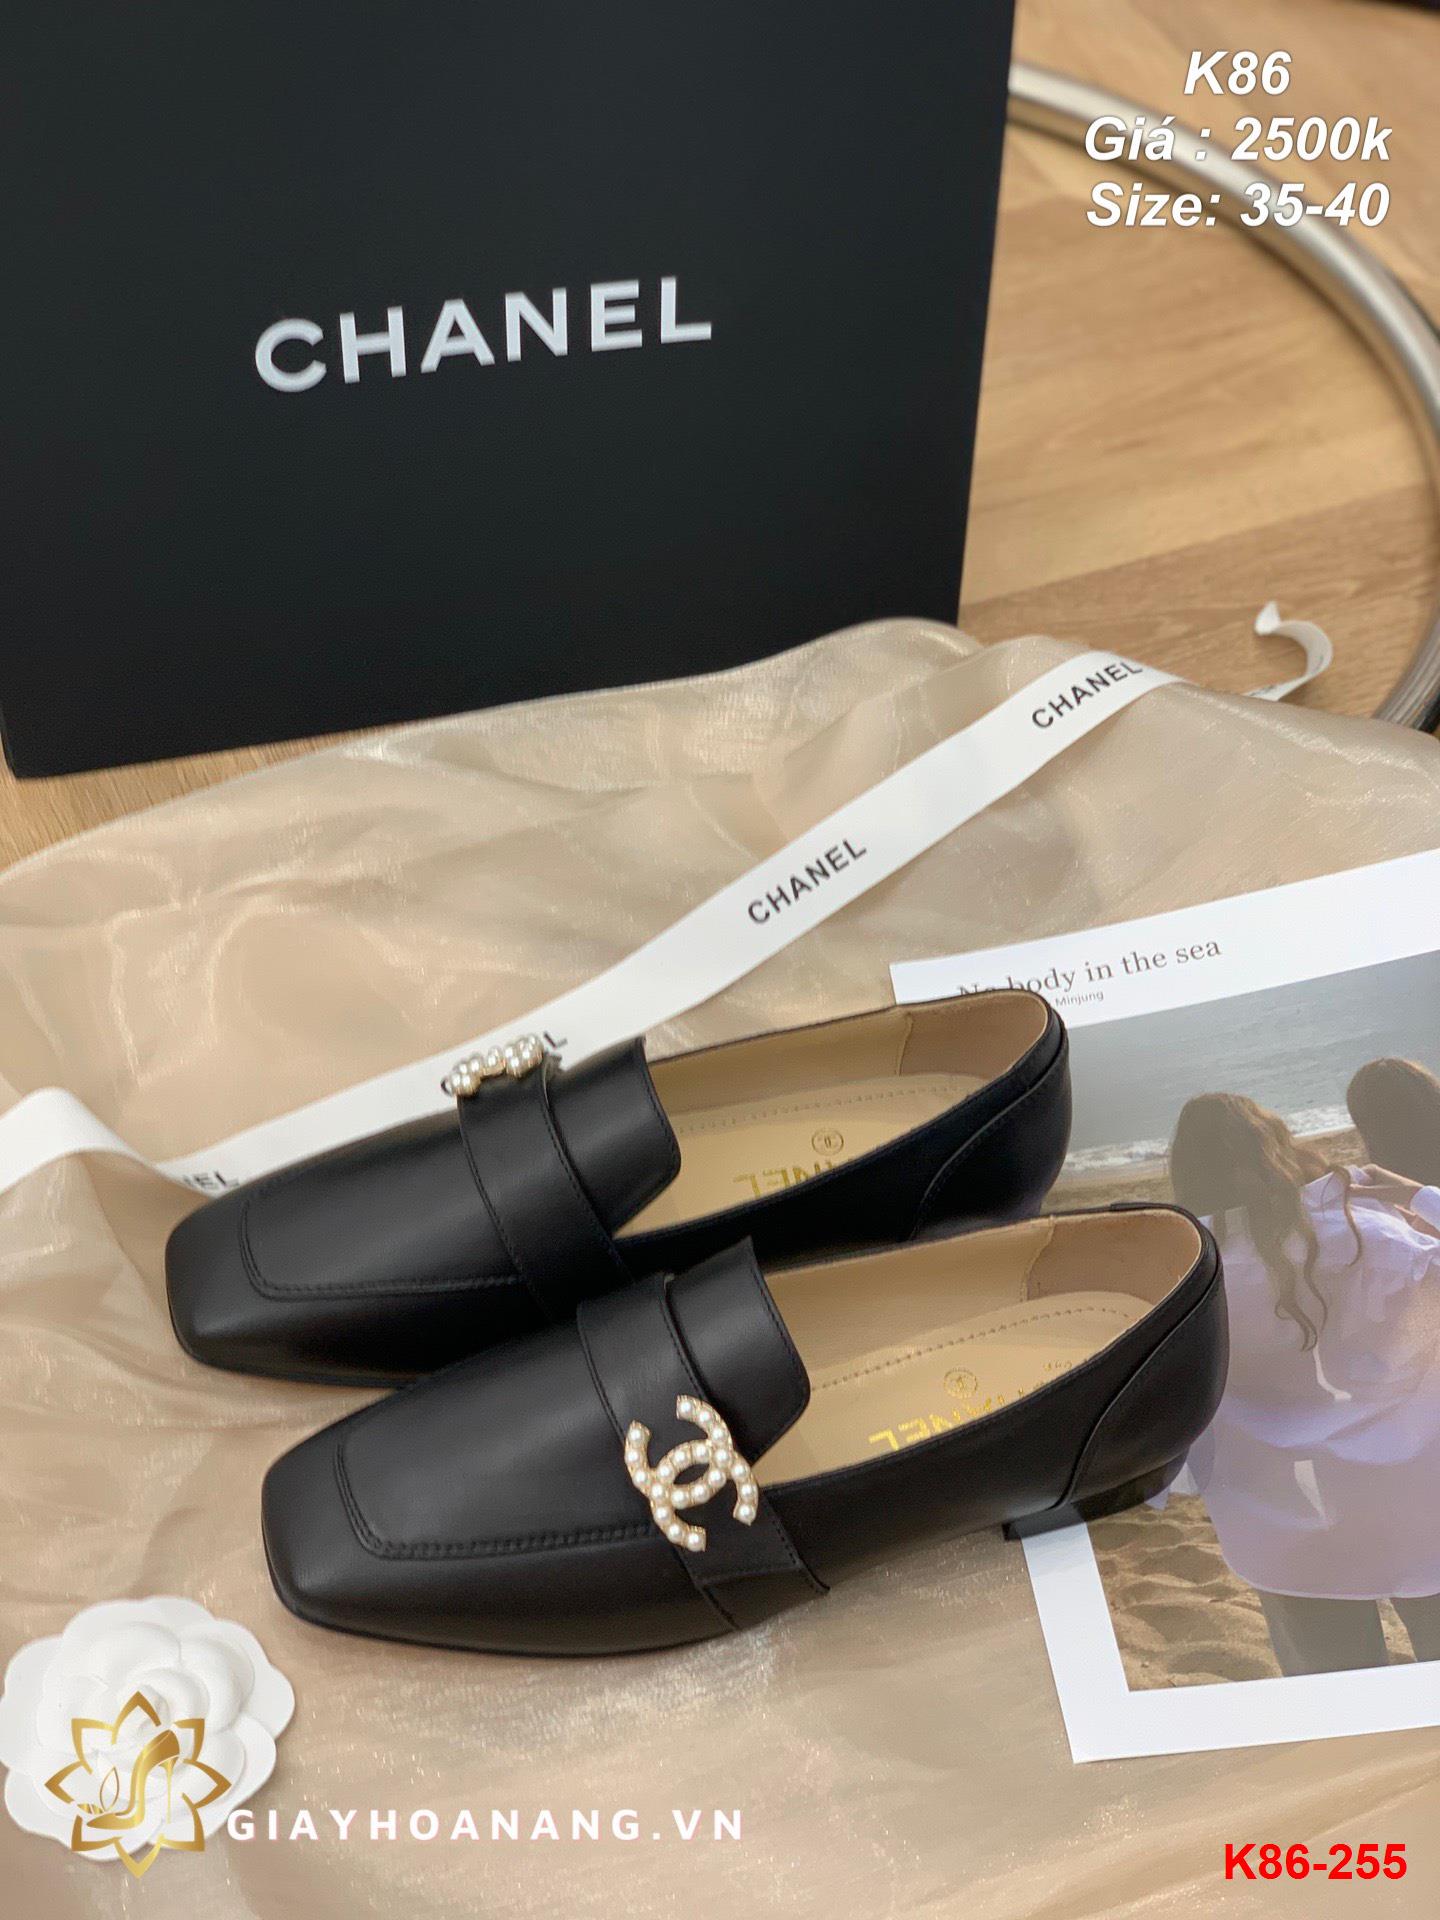 K86-255 Chanel giày lười siêu cấp